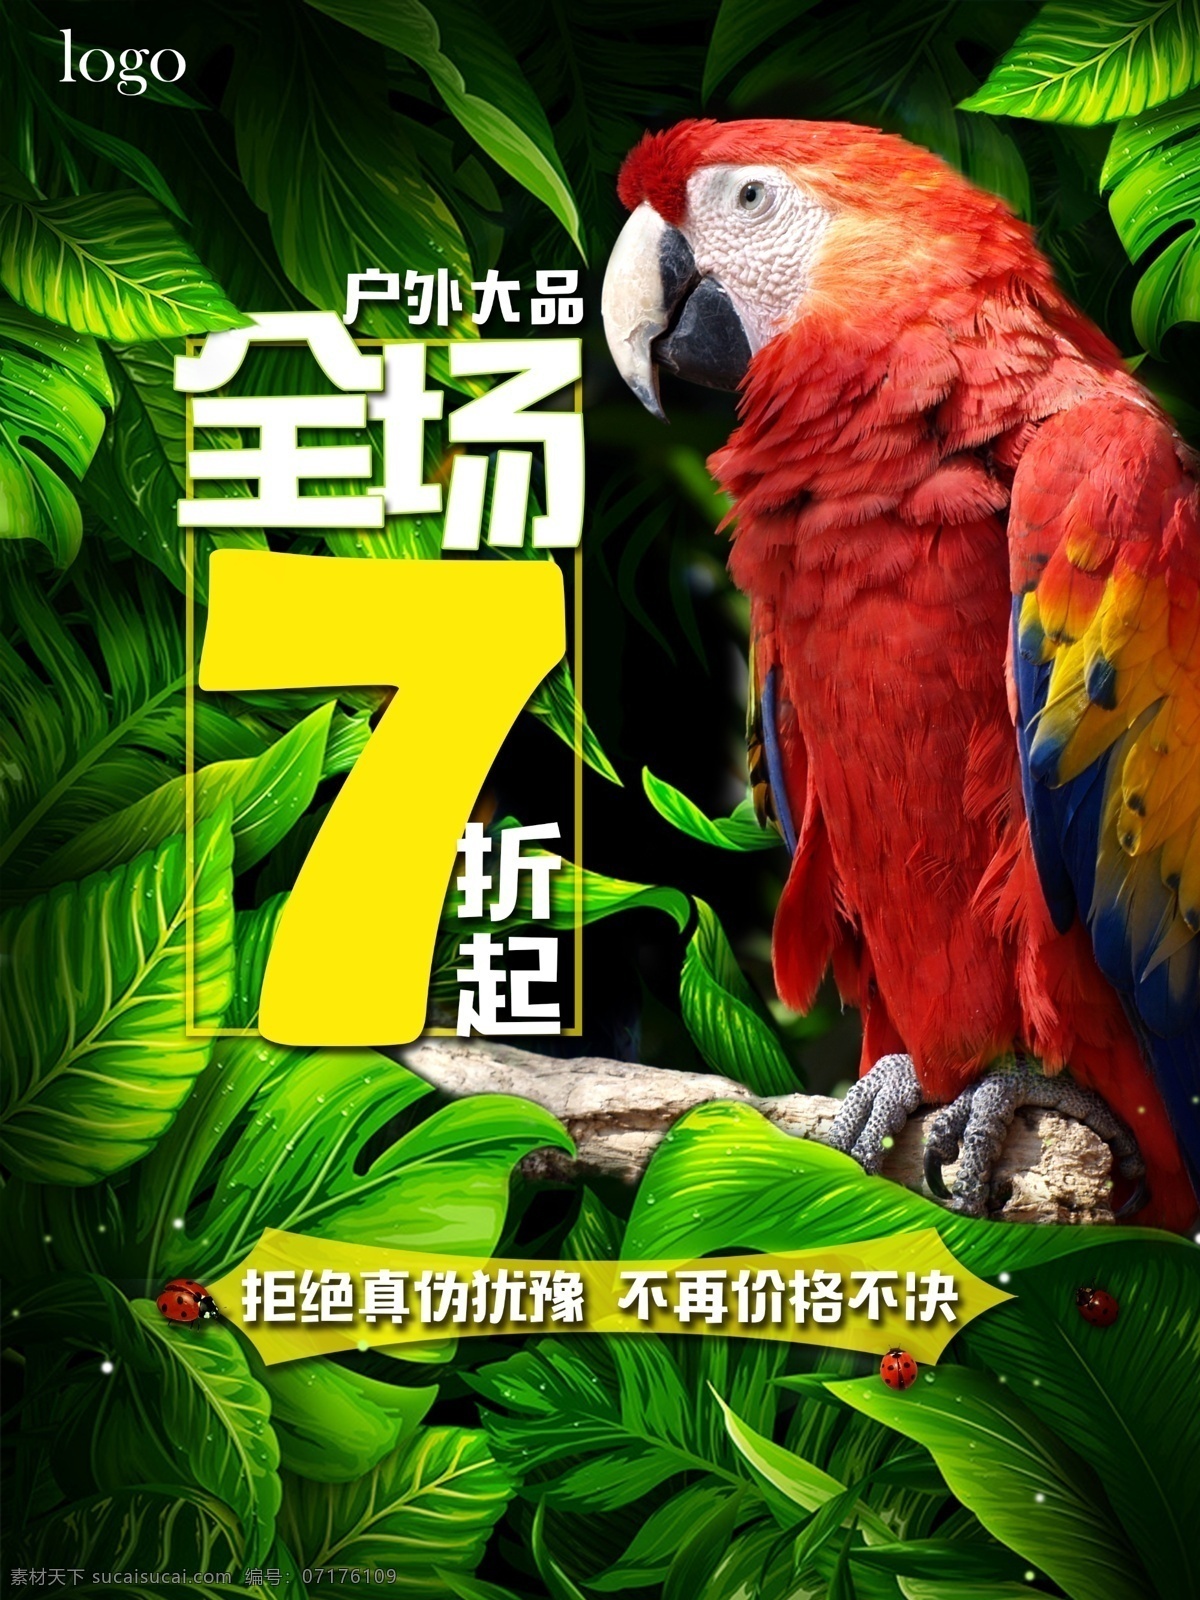 户外运动 促销 海报 鹦鹉 全场 7折 折扣 植物 绿色 热带 动物 户外 品牌 运动